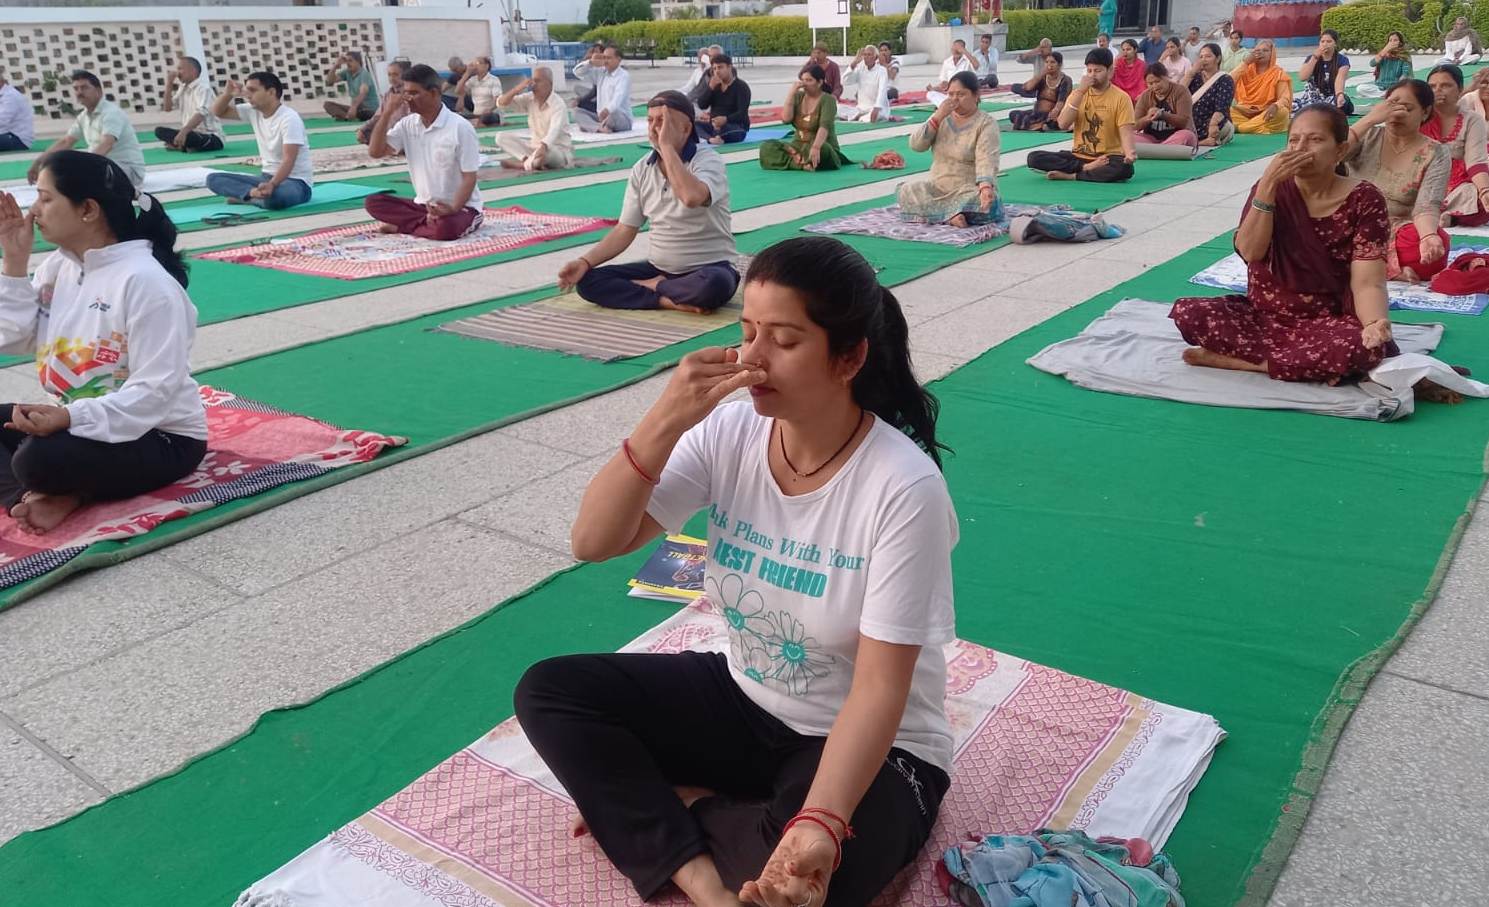 पतंजलि द्वार एचएमटी पिंजौर में चलाए जा रहे पांच दिवसीय योग शिविर का समापन